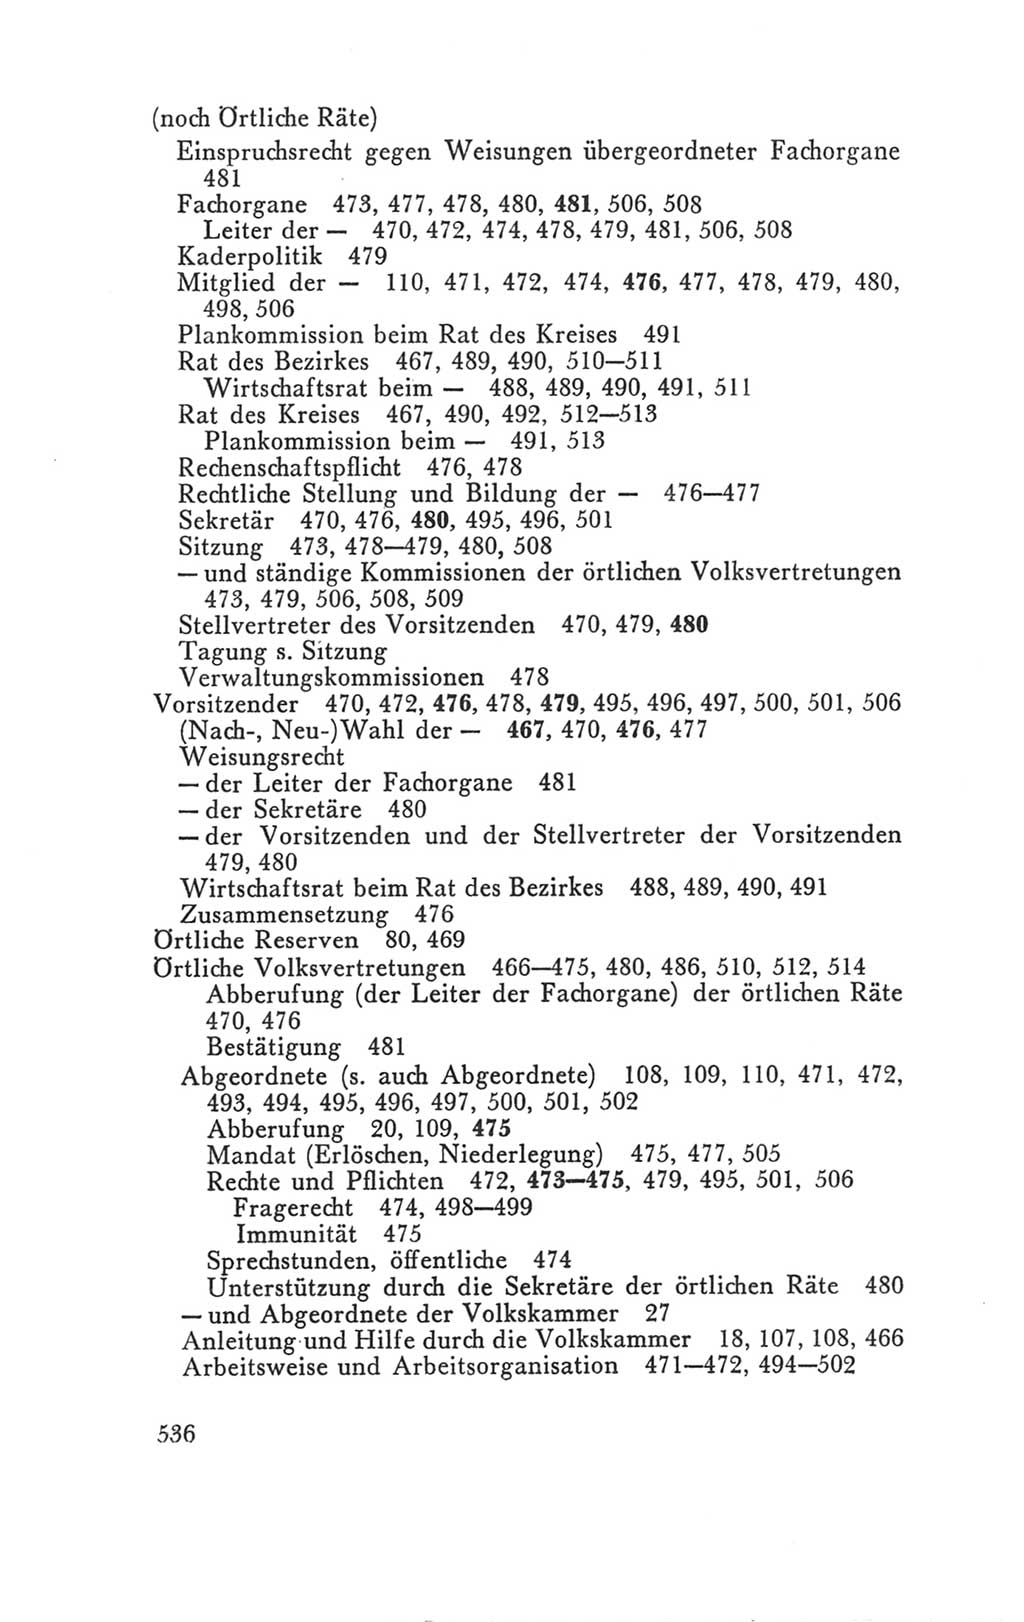 Handbuch der Volkskammer (VK) der Deutschen Demokratischen Republik (DDR), 3. Wahlperiode 1958-1963, Seite 536 (Hdb. VK. DDR 3. WP. 1958-1963, S. 536)